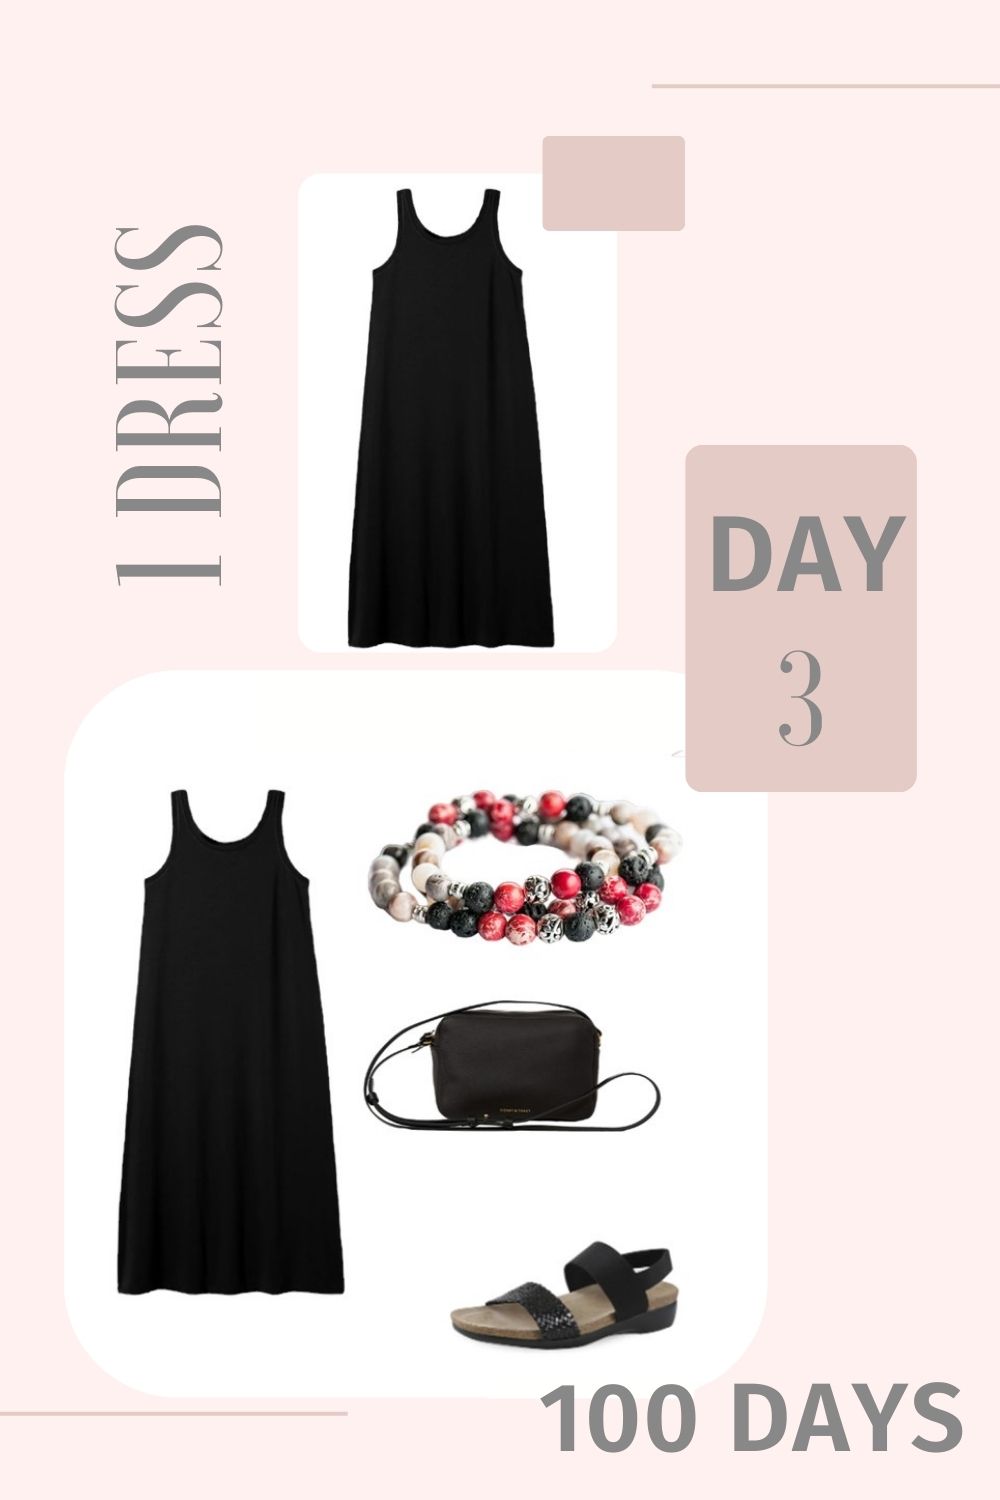 1 Dress 100 Days - Day 3